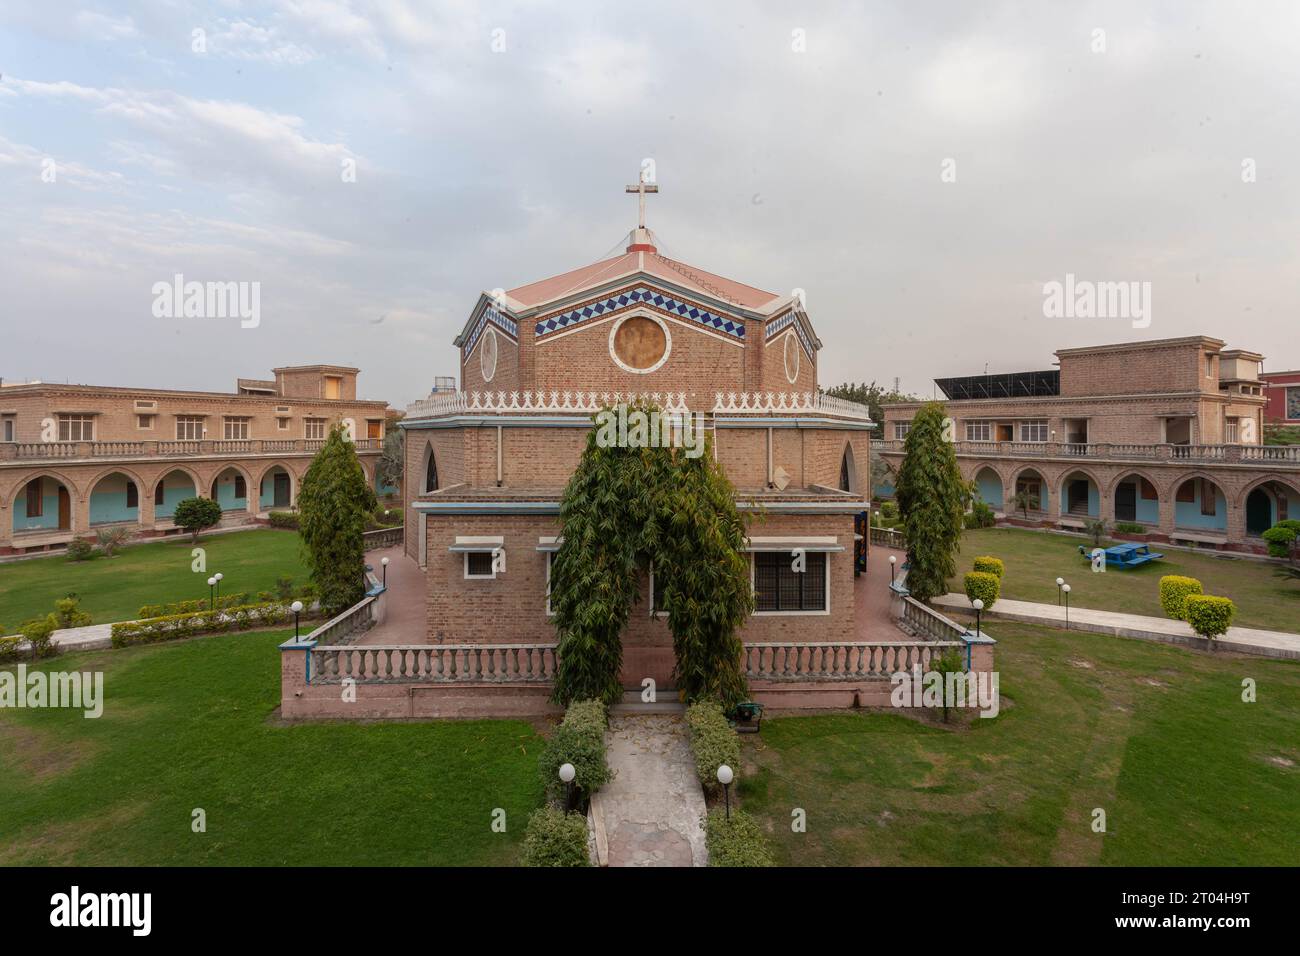 La imagen del Renewal Center Lahore captura una exquisita mezcla de impresionante arquitectura y exuberante vegetación, creando un oasis armonioso. Foto de stock